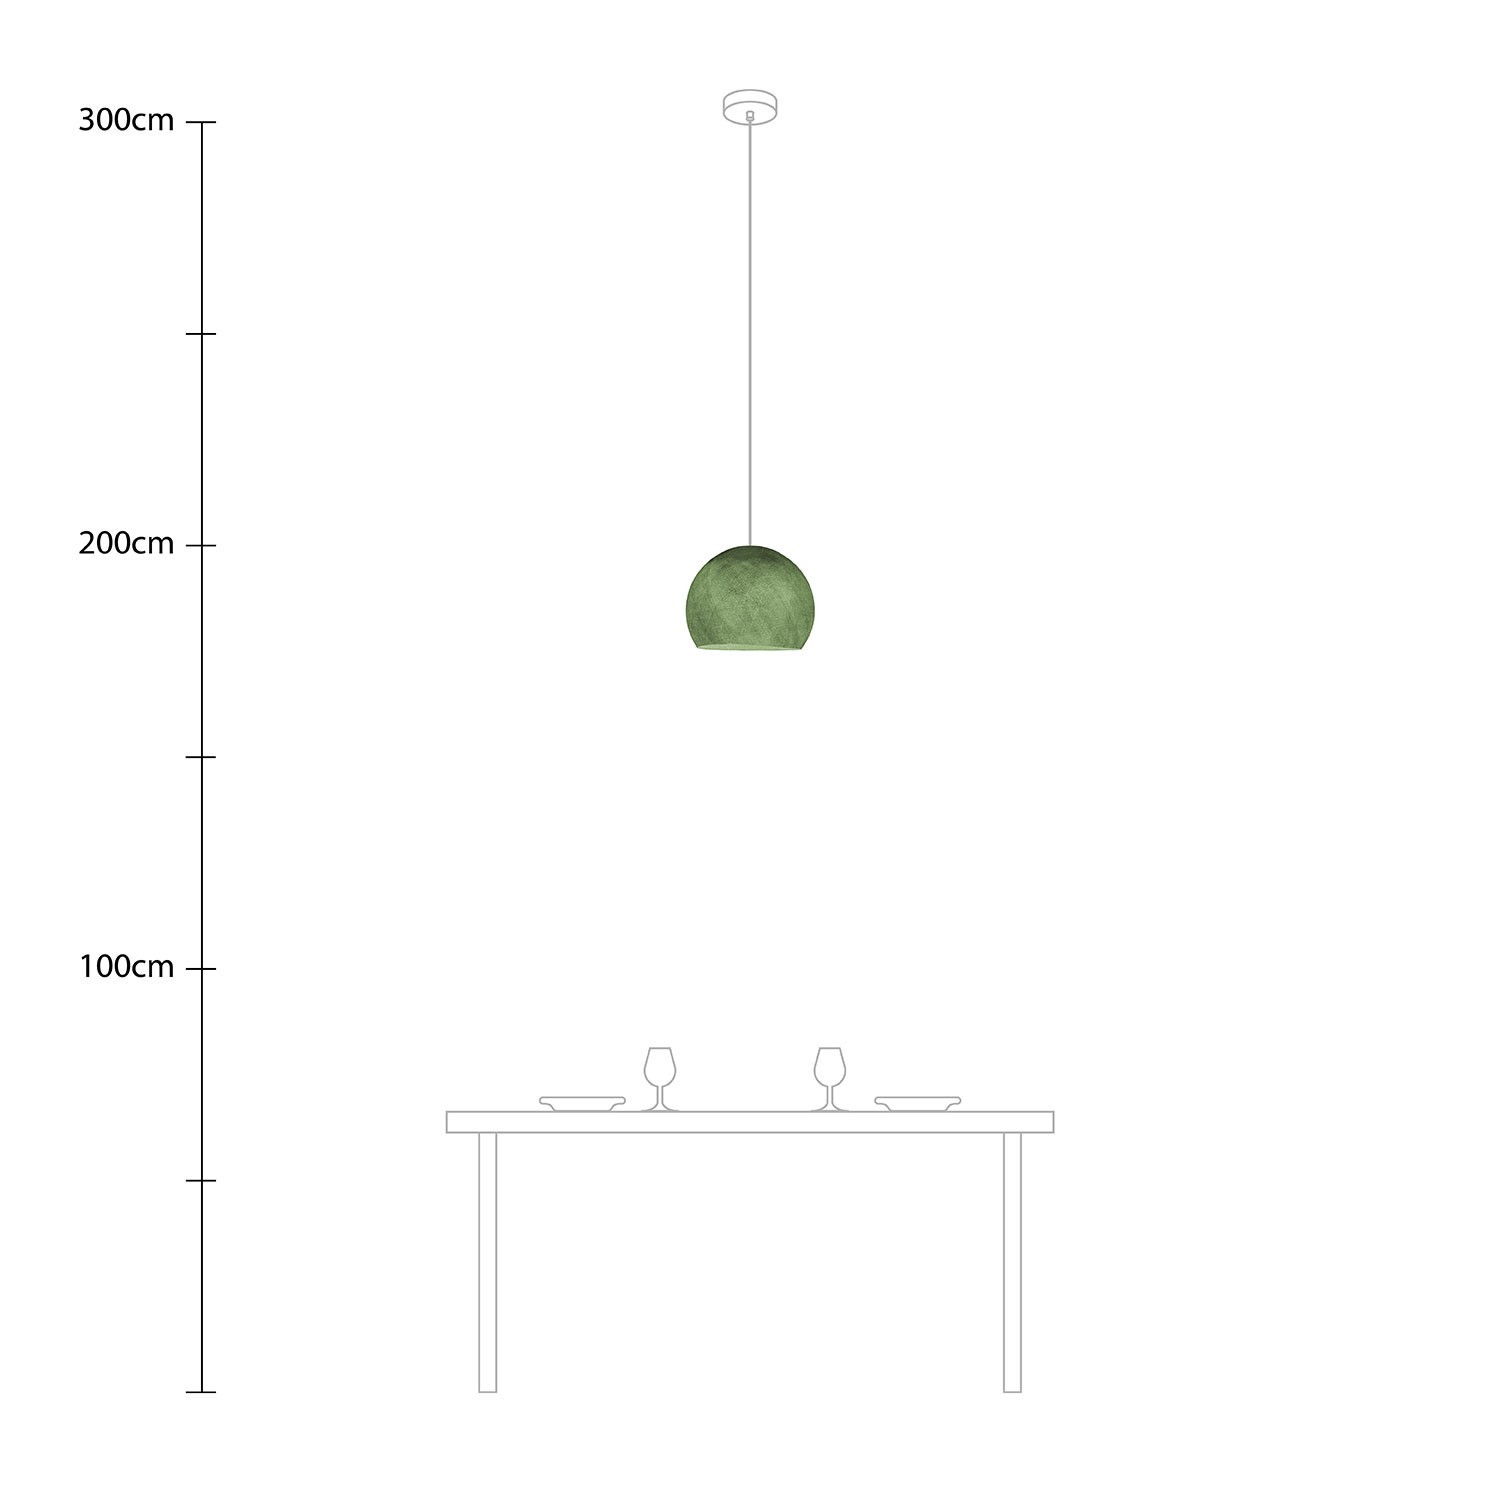 Lampenschirm aus Garn Modell Sfera - 100% handgemacht